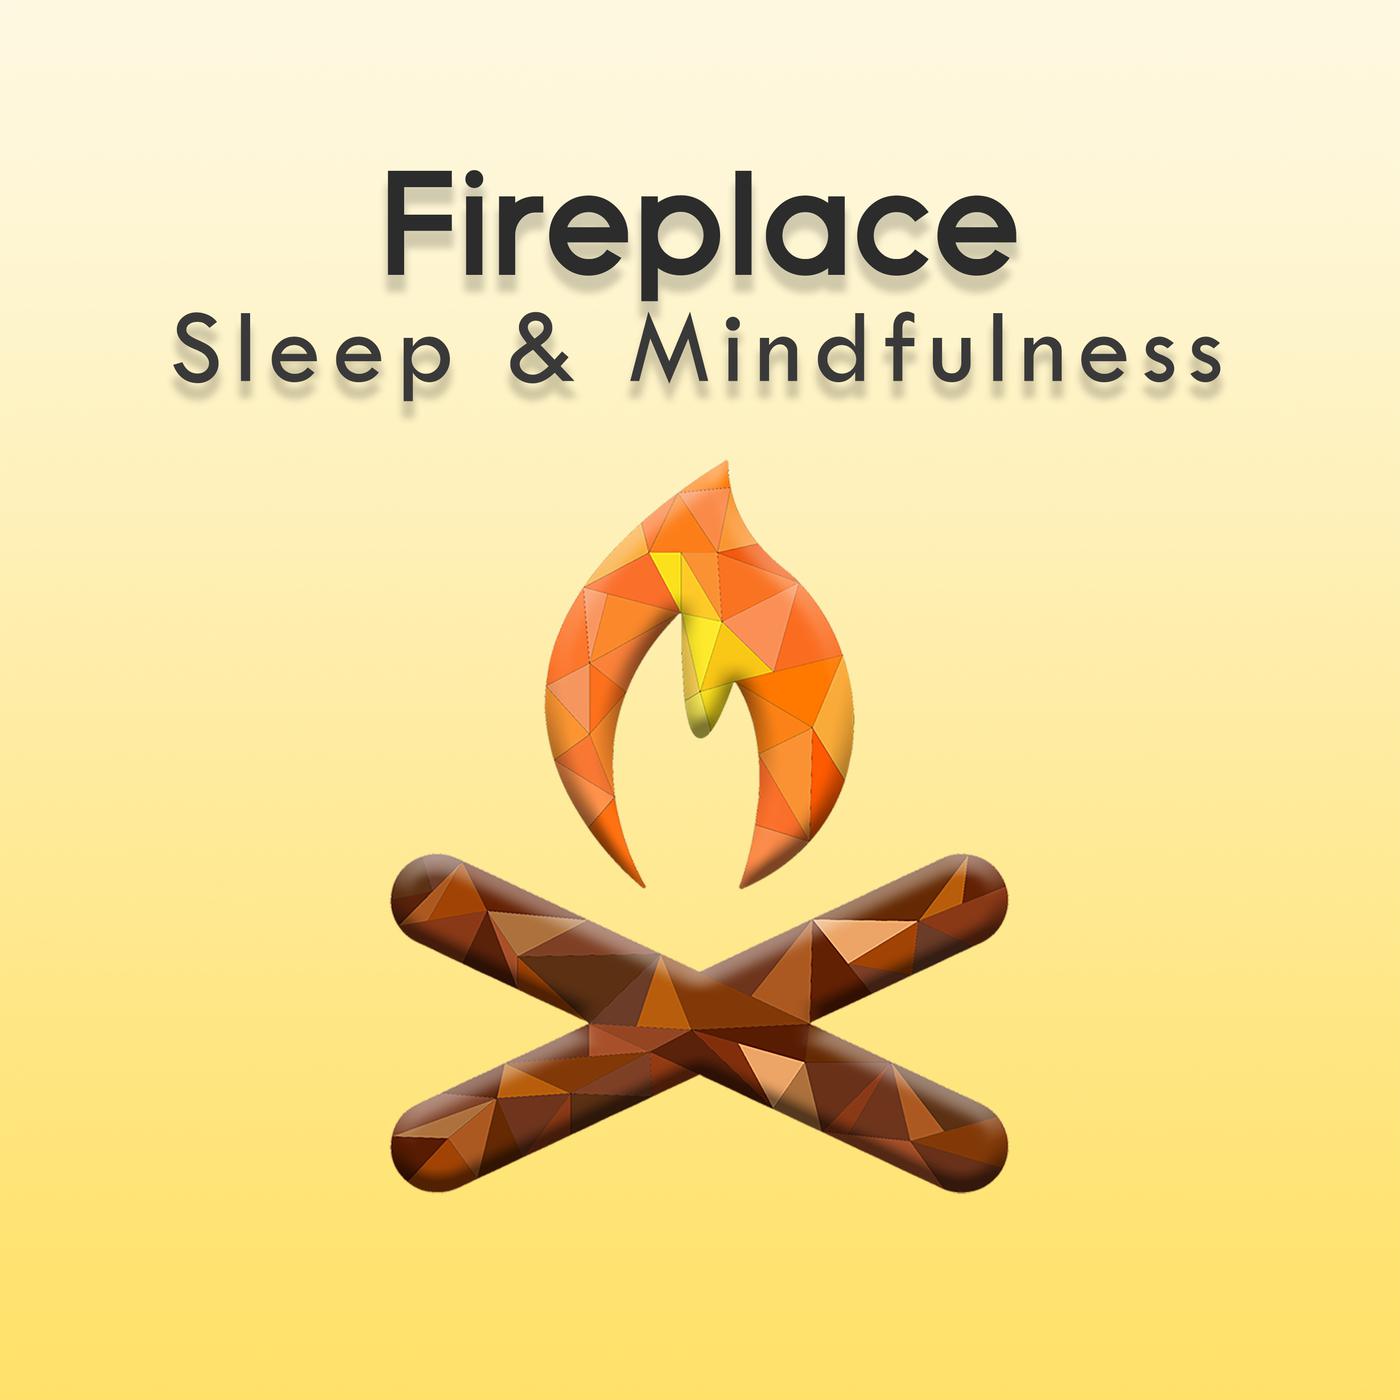 Fireplace (Sleep & Mindfulness)